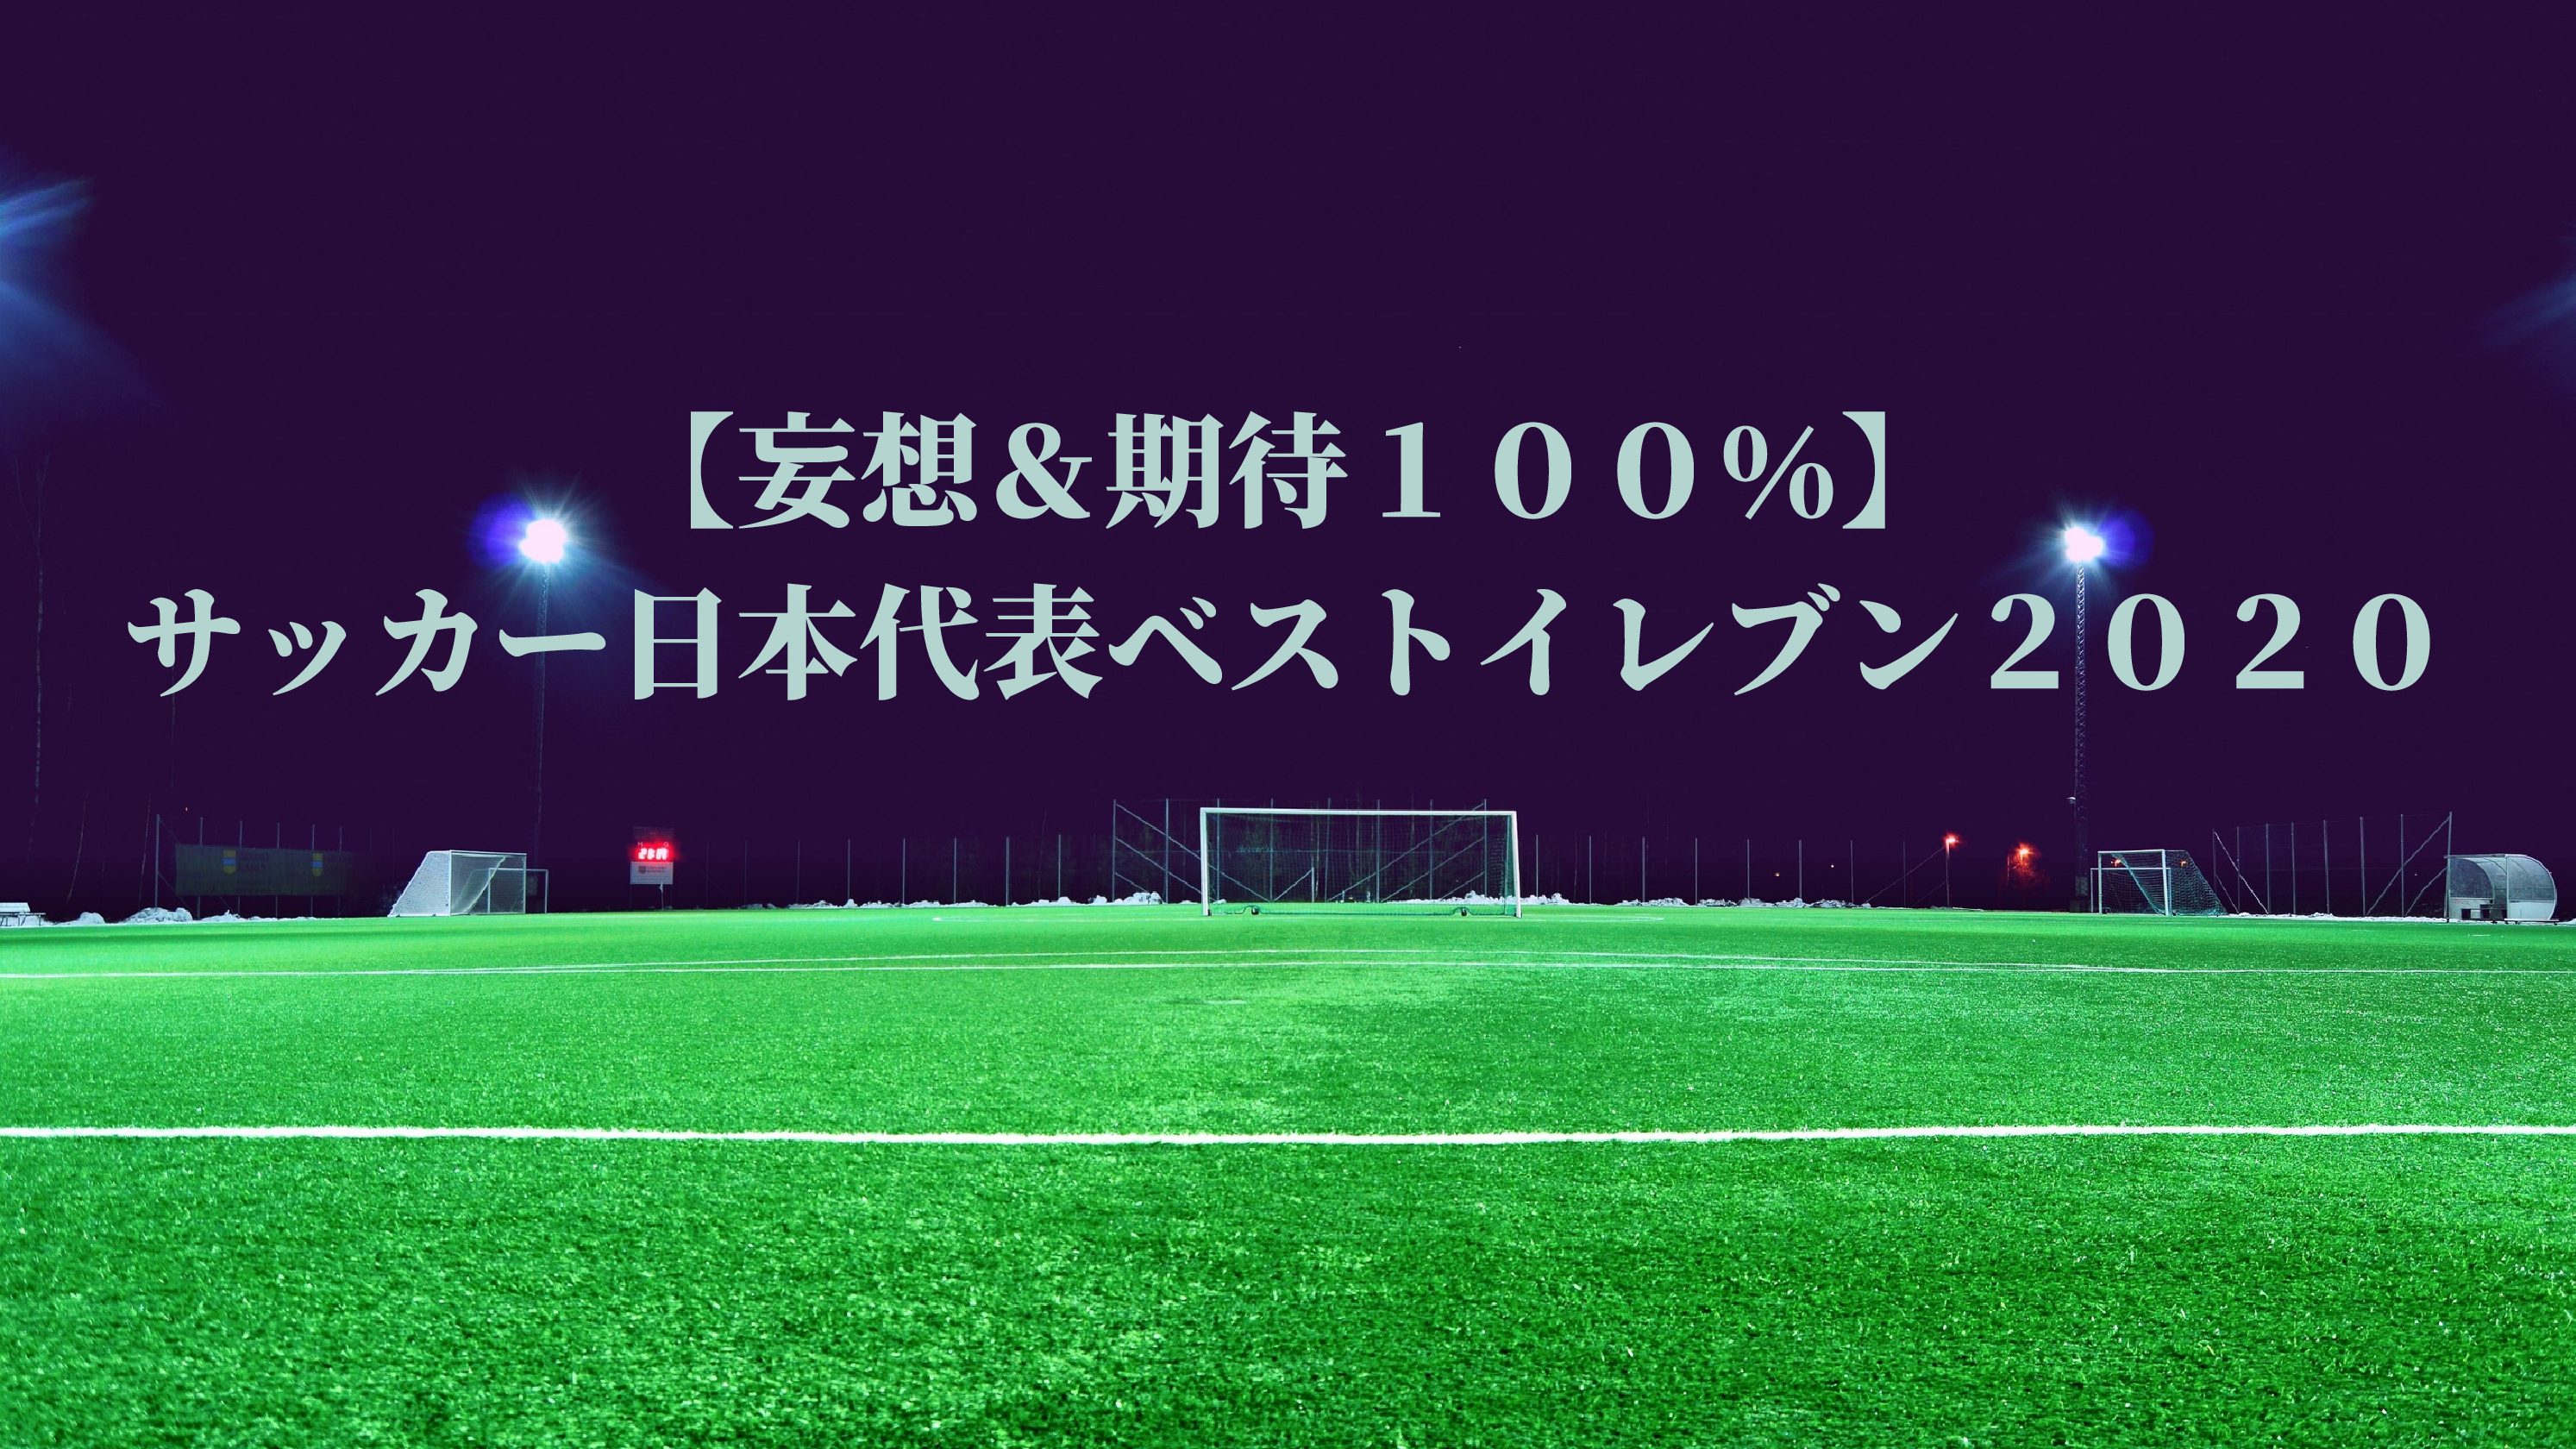 香川真司移籍 セレッソ過去10年の成績と復帰の可能性や背番号は サッカーぶんがく